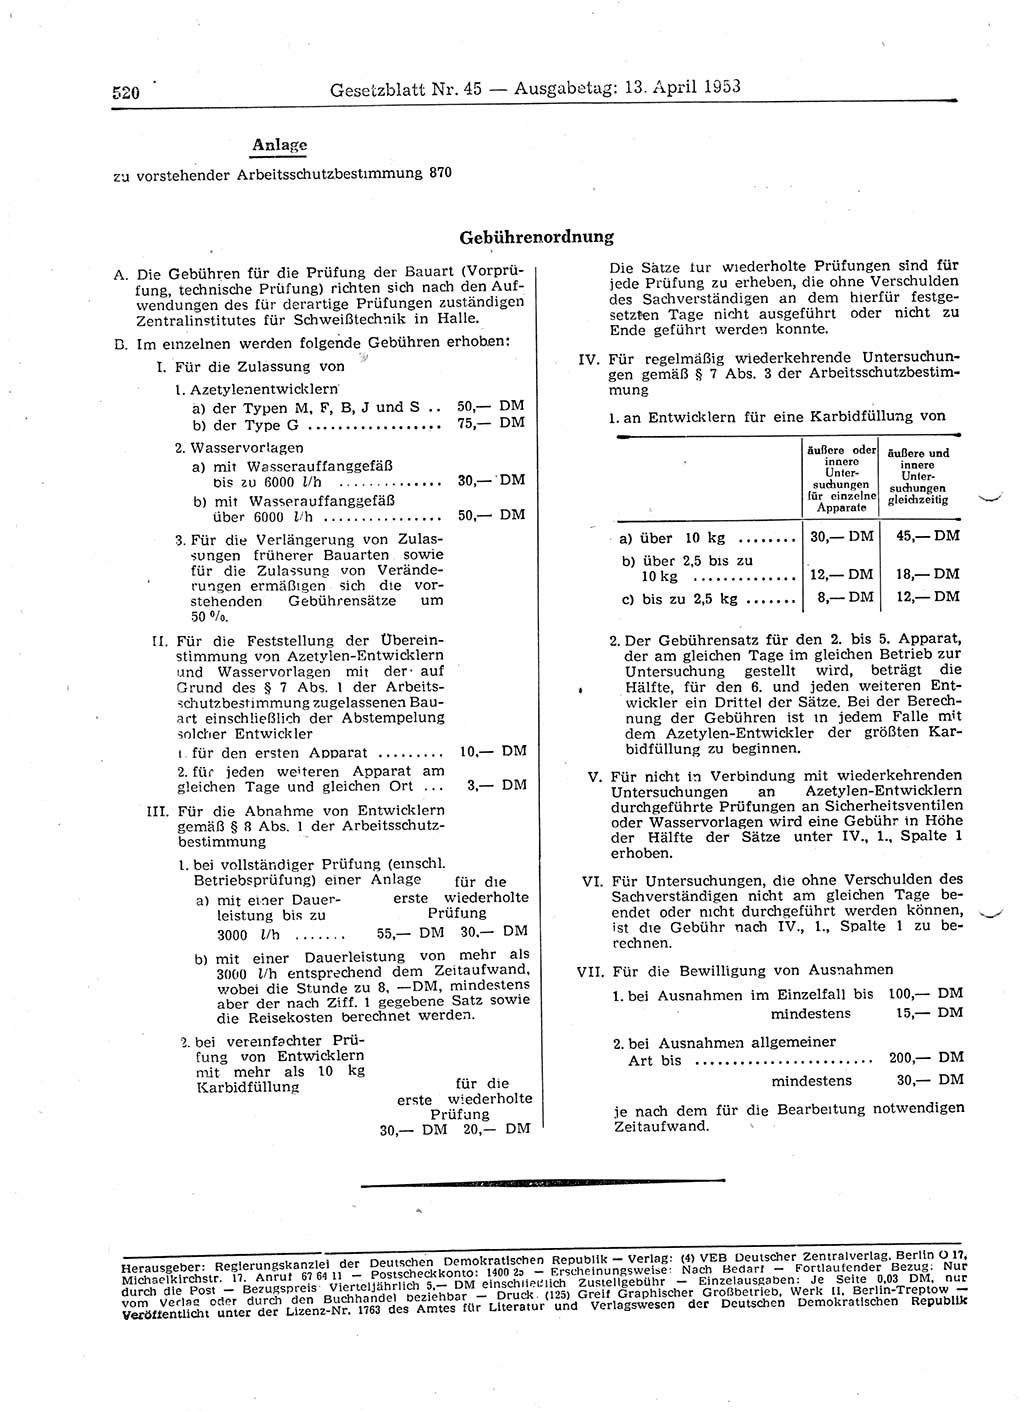 Gesetzblatt (GBl.) der Deutschen Demokratischen Republik (DDR) 1953, Seite 520 (GBl. DDR 1953, S. 520)